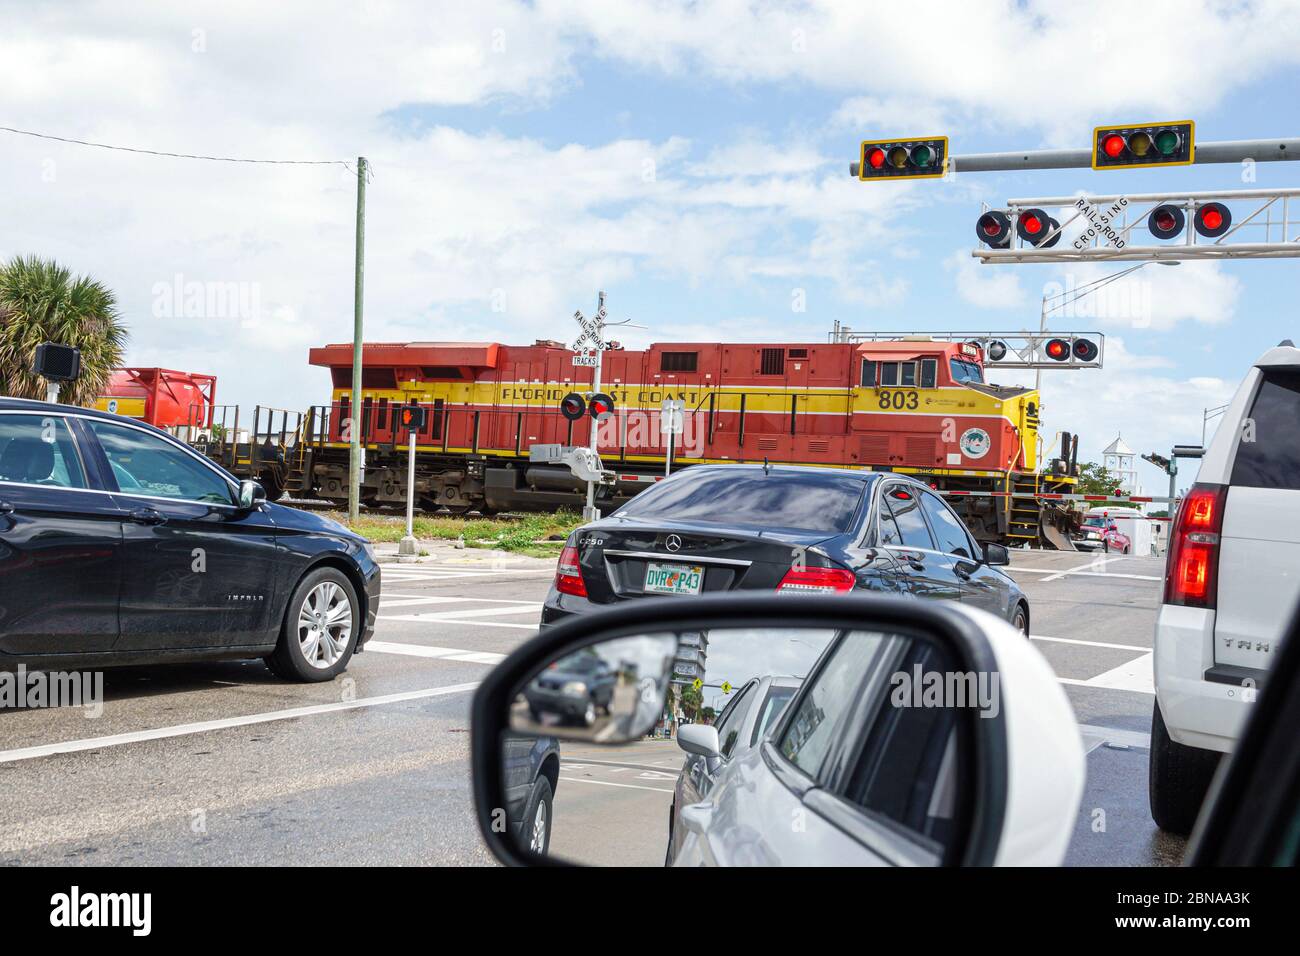 Miami Florida, passage de chemin de fer à travers les portes en passant le train, arrêté véhicules de circulation en attente, East Coast Railway, locomotive rouge, les visiteurs Voyage trave Banque D'Images